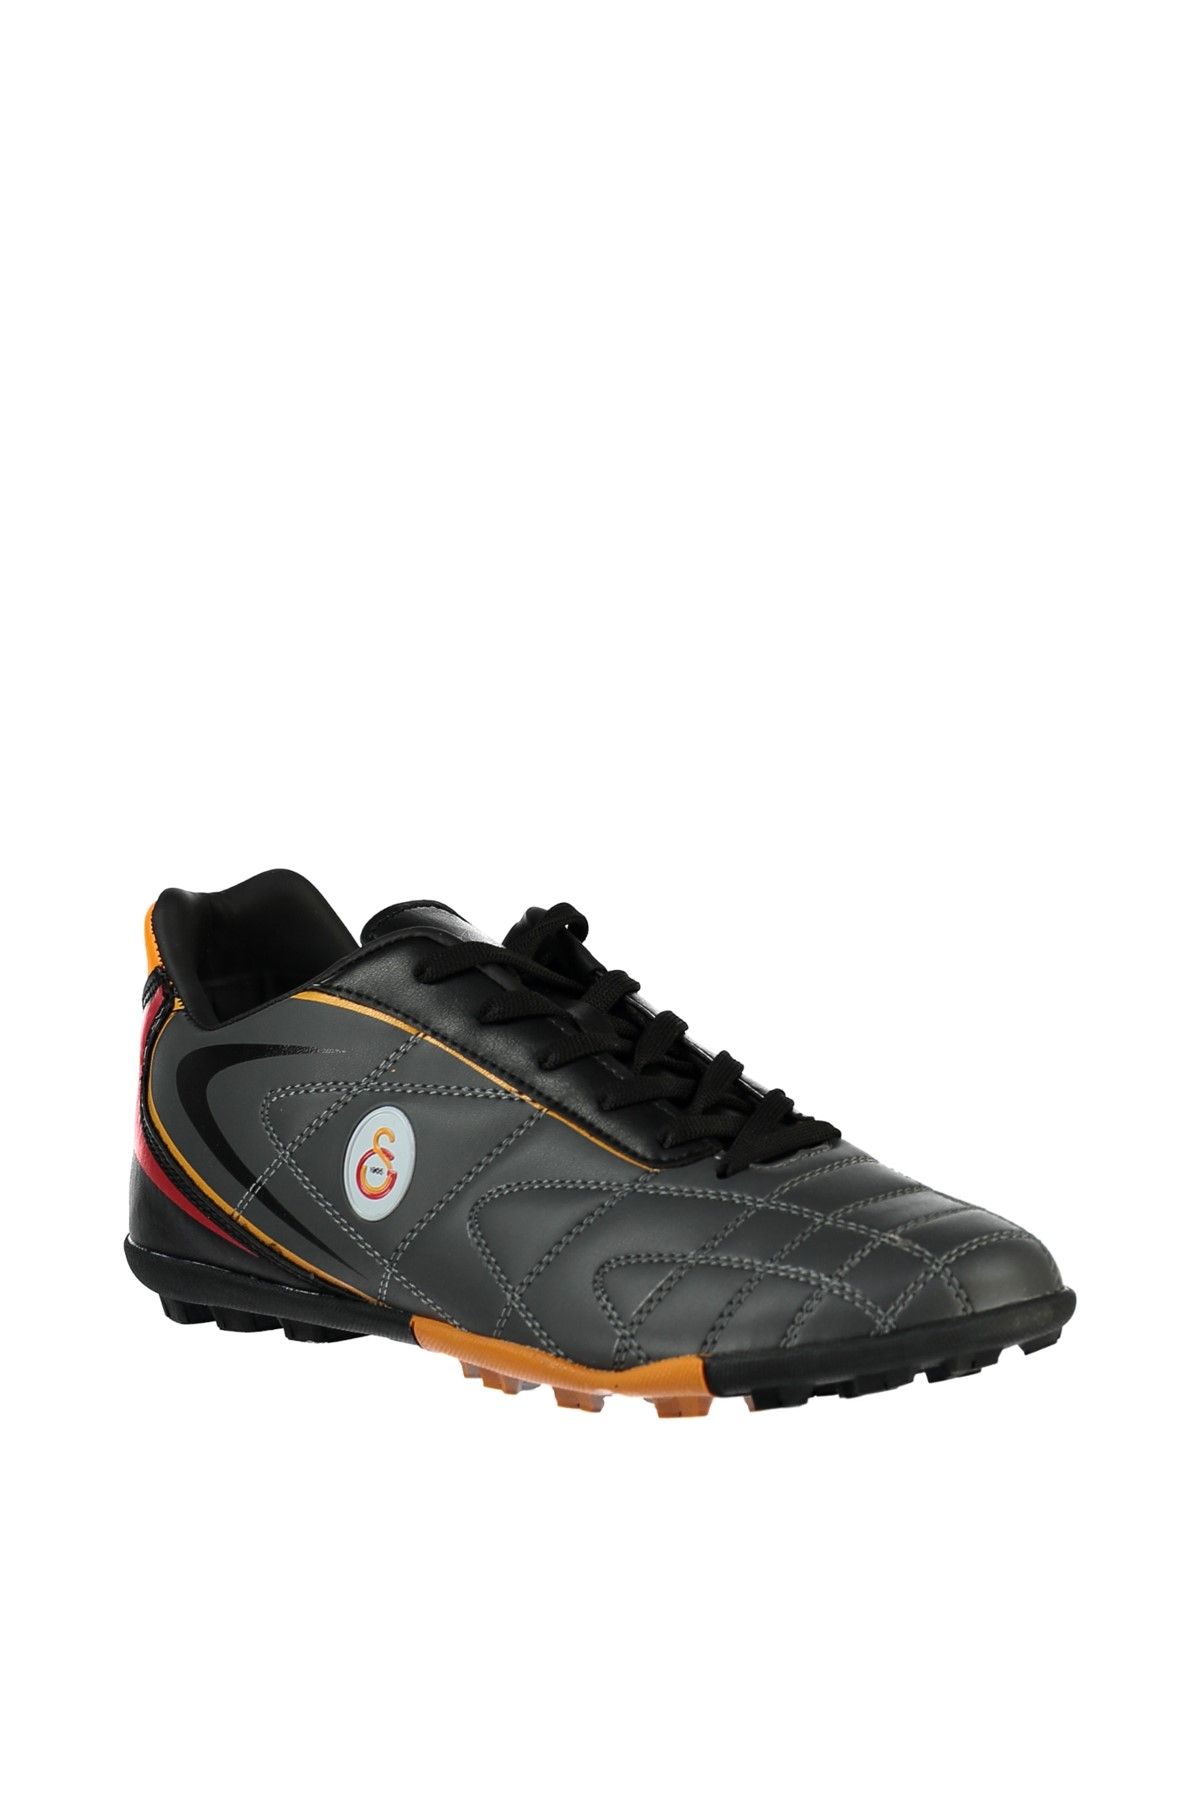 Galatasaray GS A1310386 Siyah Kırmızı Erkek Halı Saha Ayakkabısı 100230381